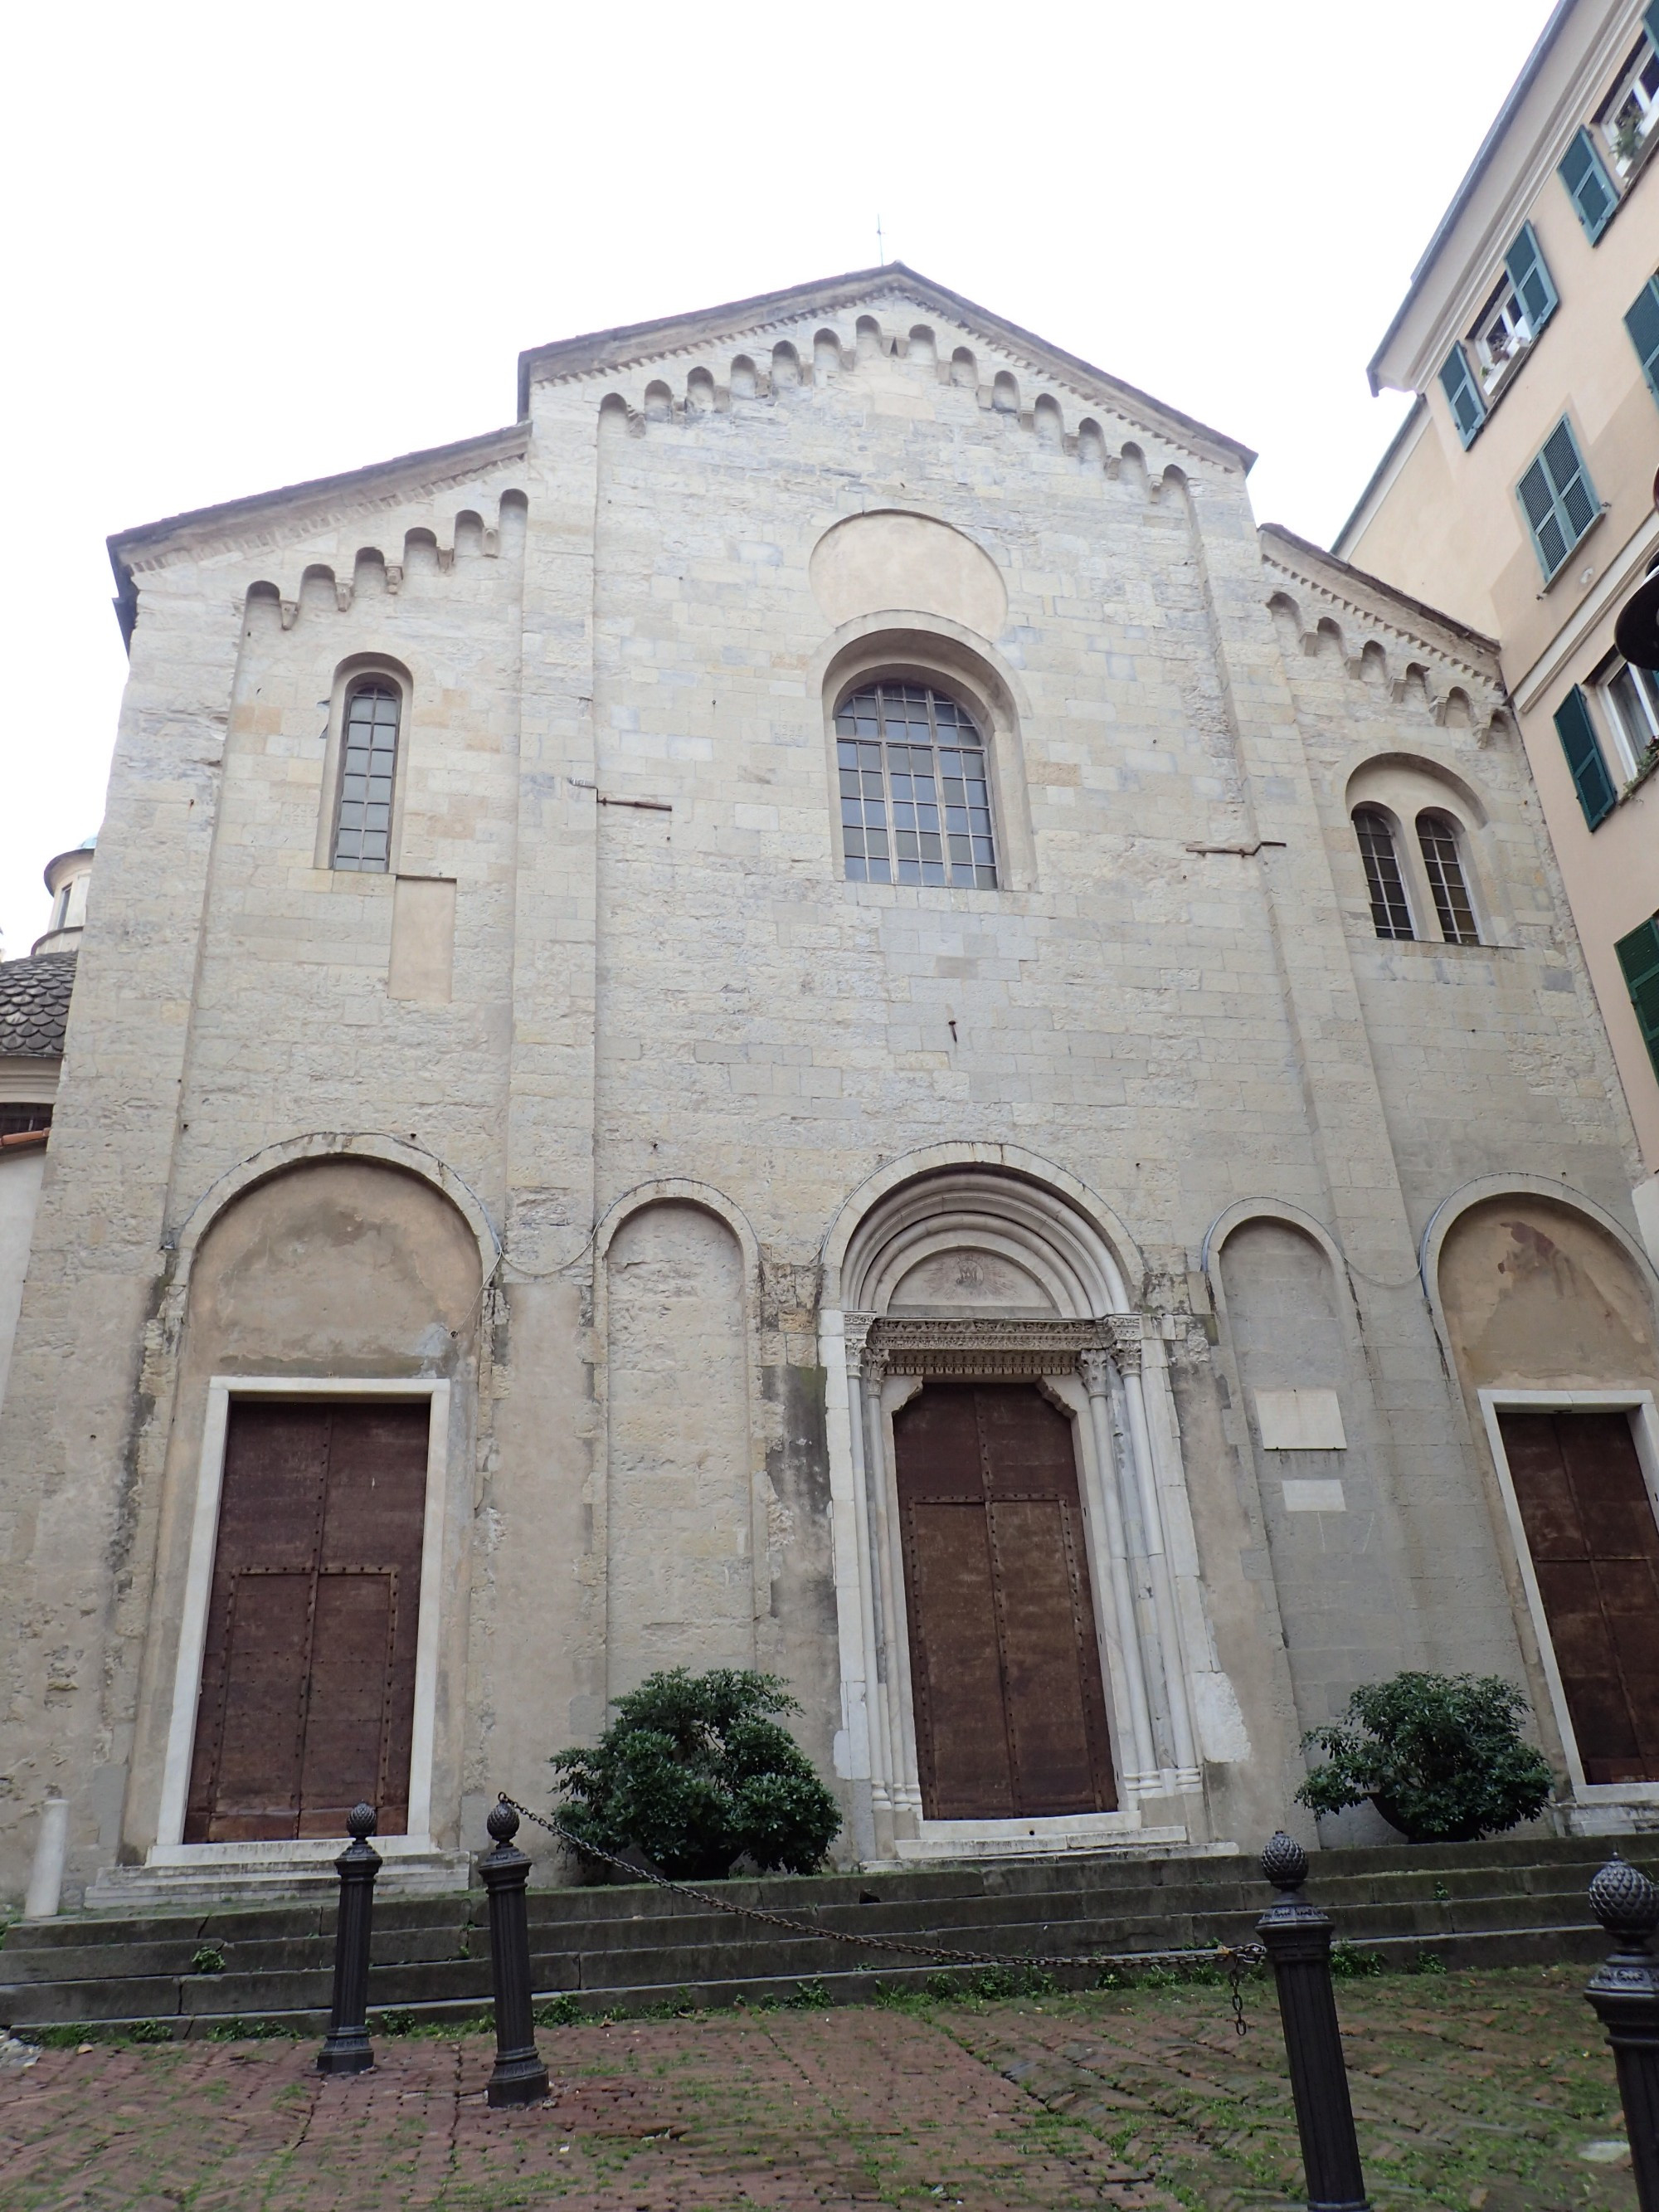 Chiesa Santa Maria di Castello, Italy